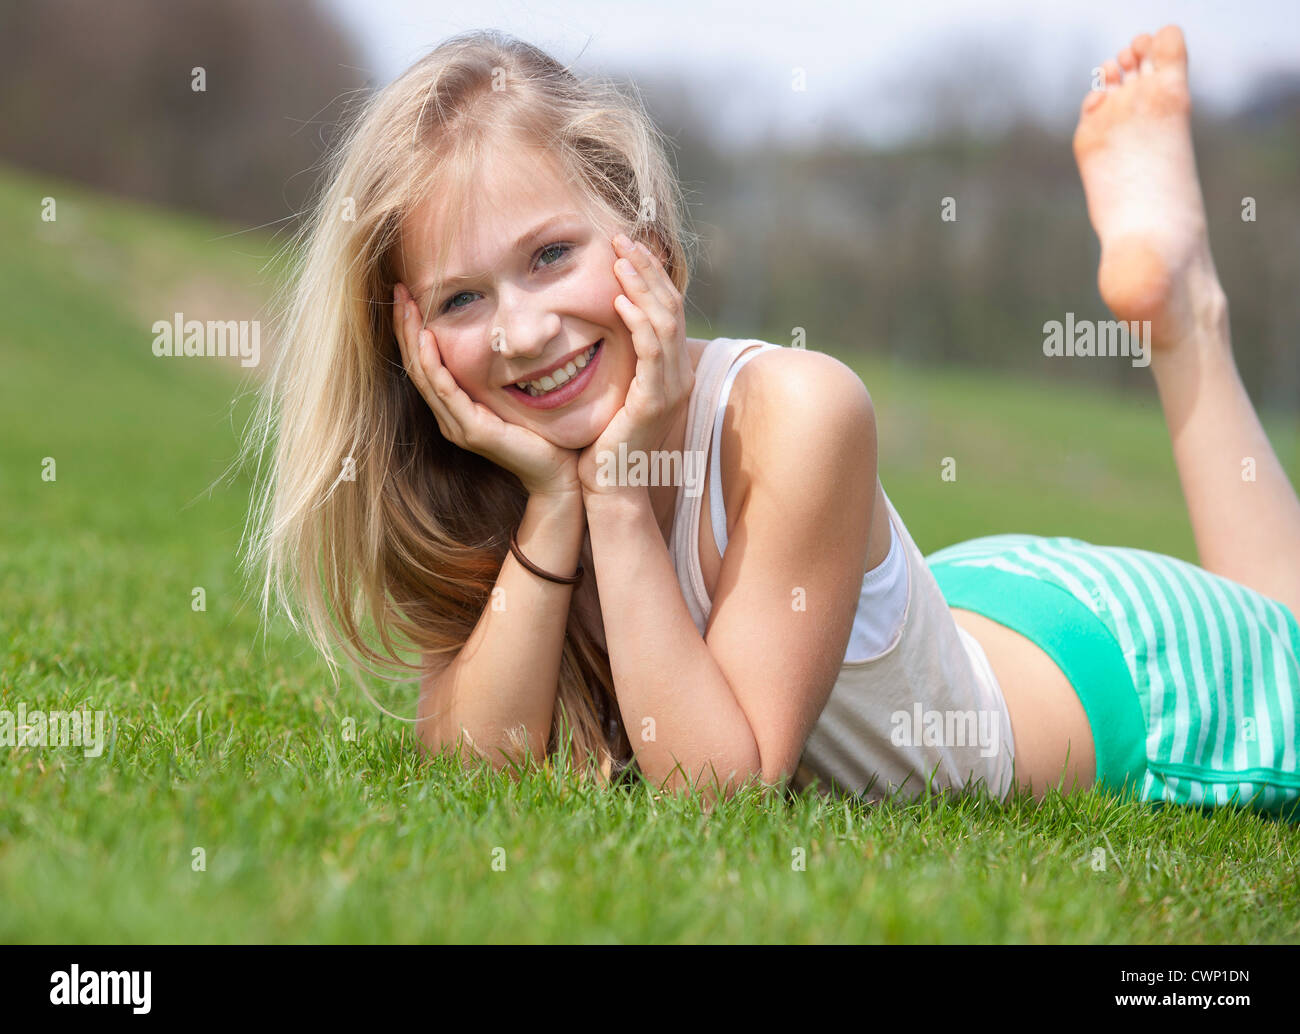 Österreich Teenage Mädchen Liegen Auf Wiese Lächeln Porträt Stockfotografie Alamy 